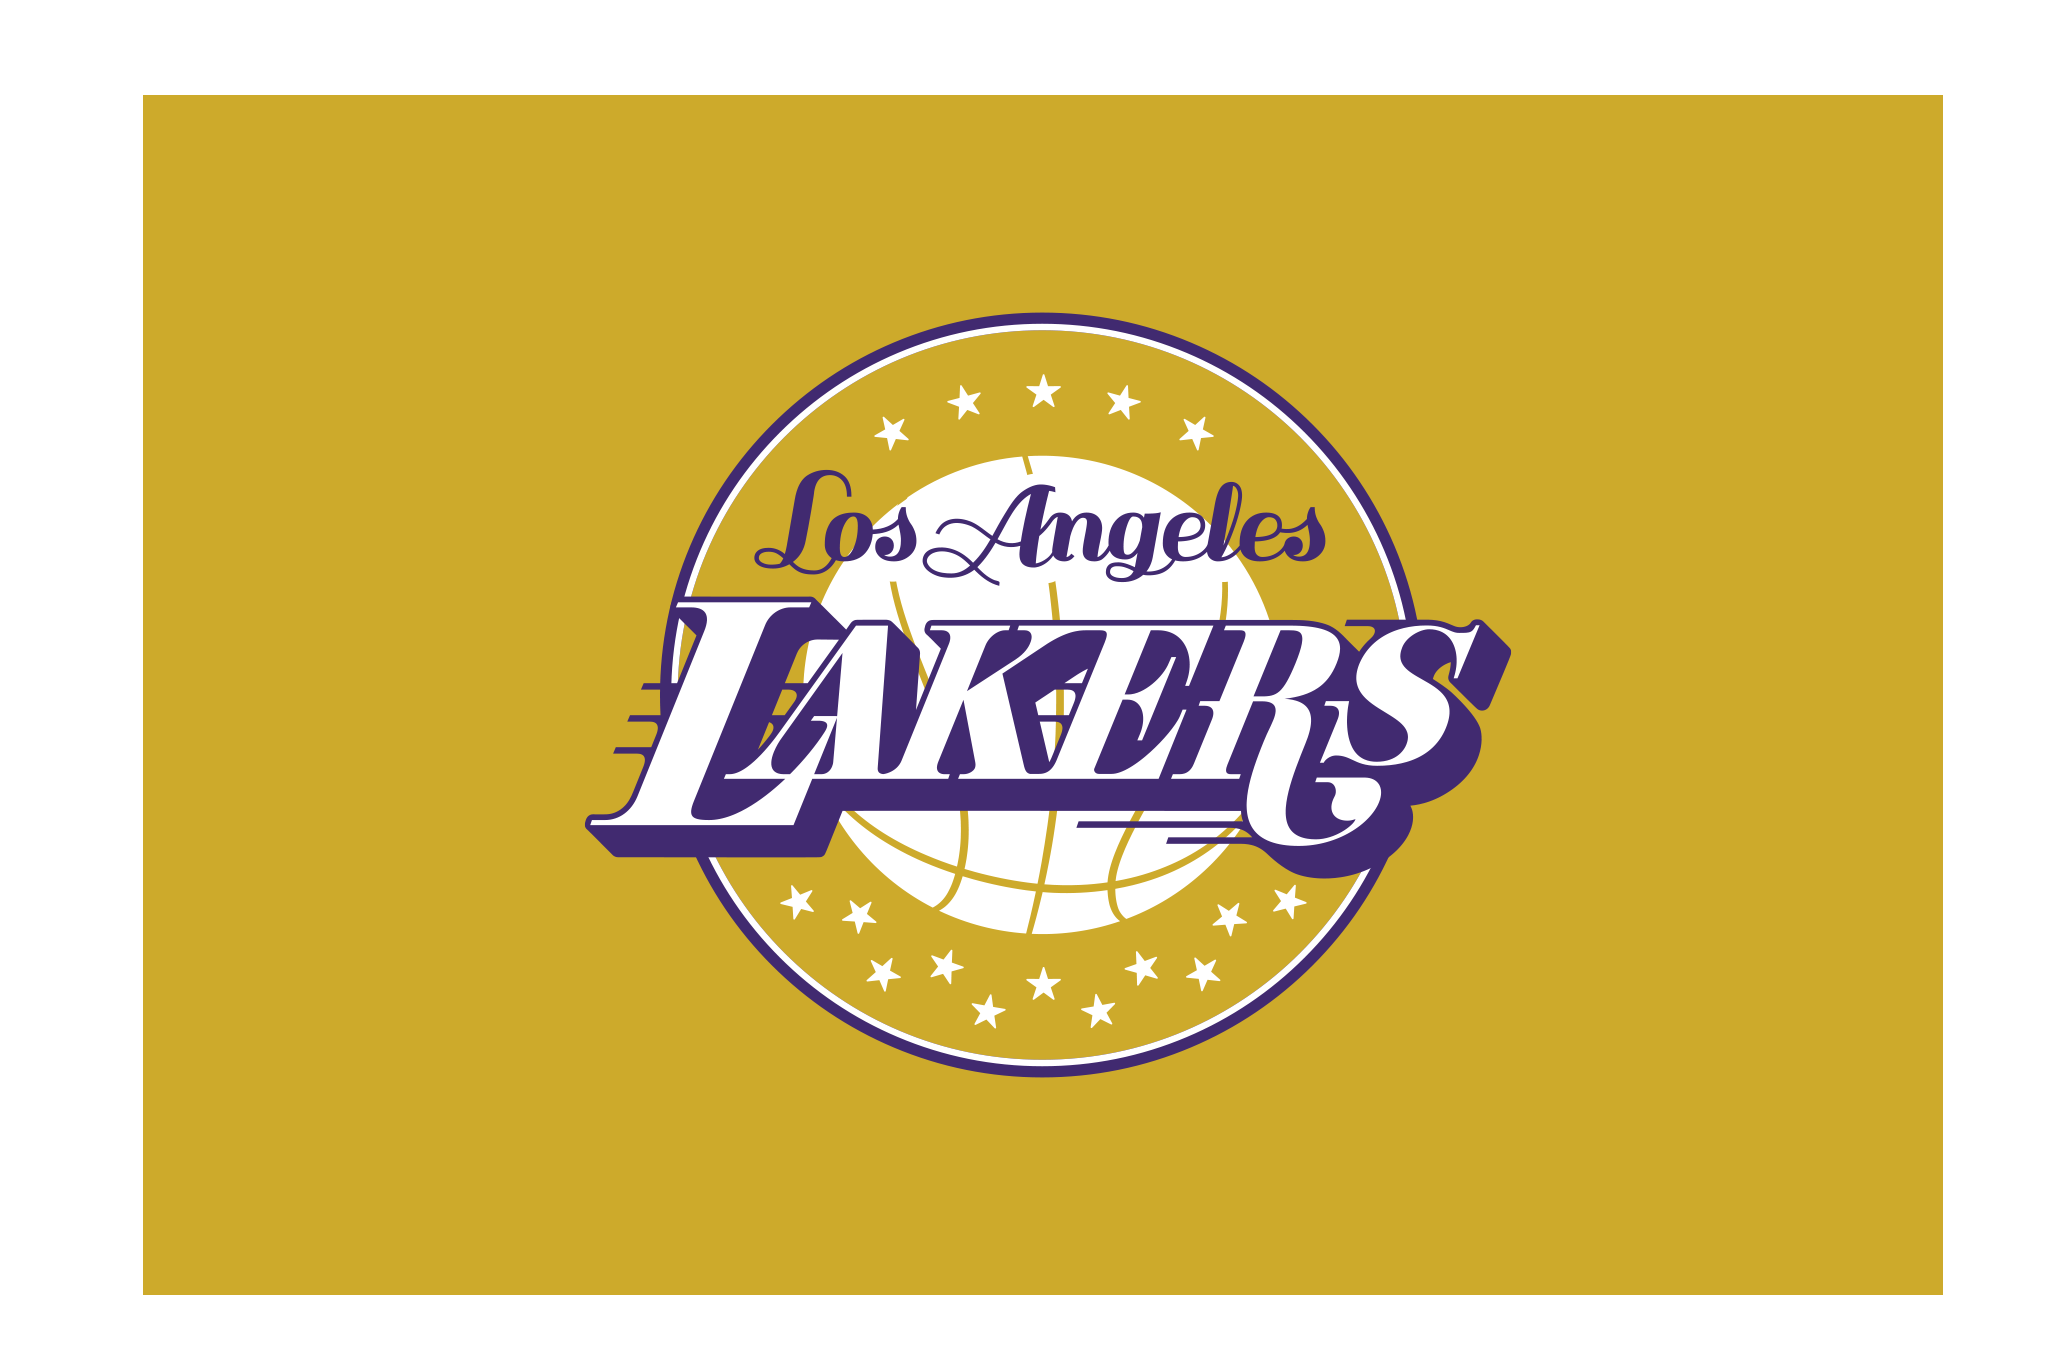 Los angeles 52 текст. Лос-Анджелес Лейкерс логотип. Лос-Анджелес Лейкерс надпись. NBA los Angeles Lakers логотип. Лос-Анджелес Лейкерс символ.